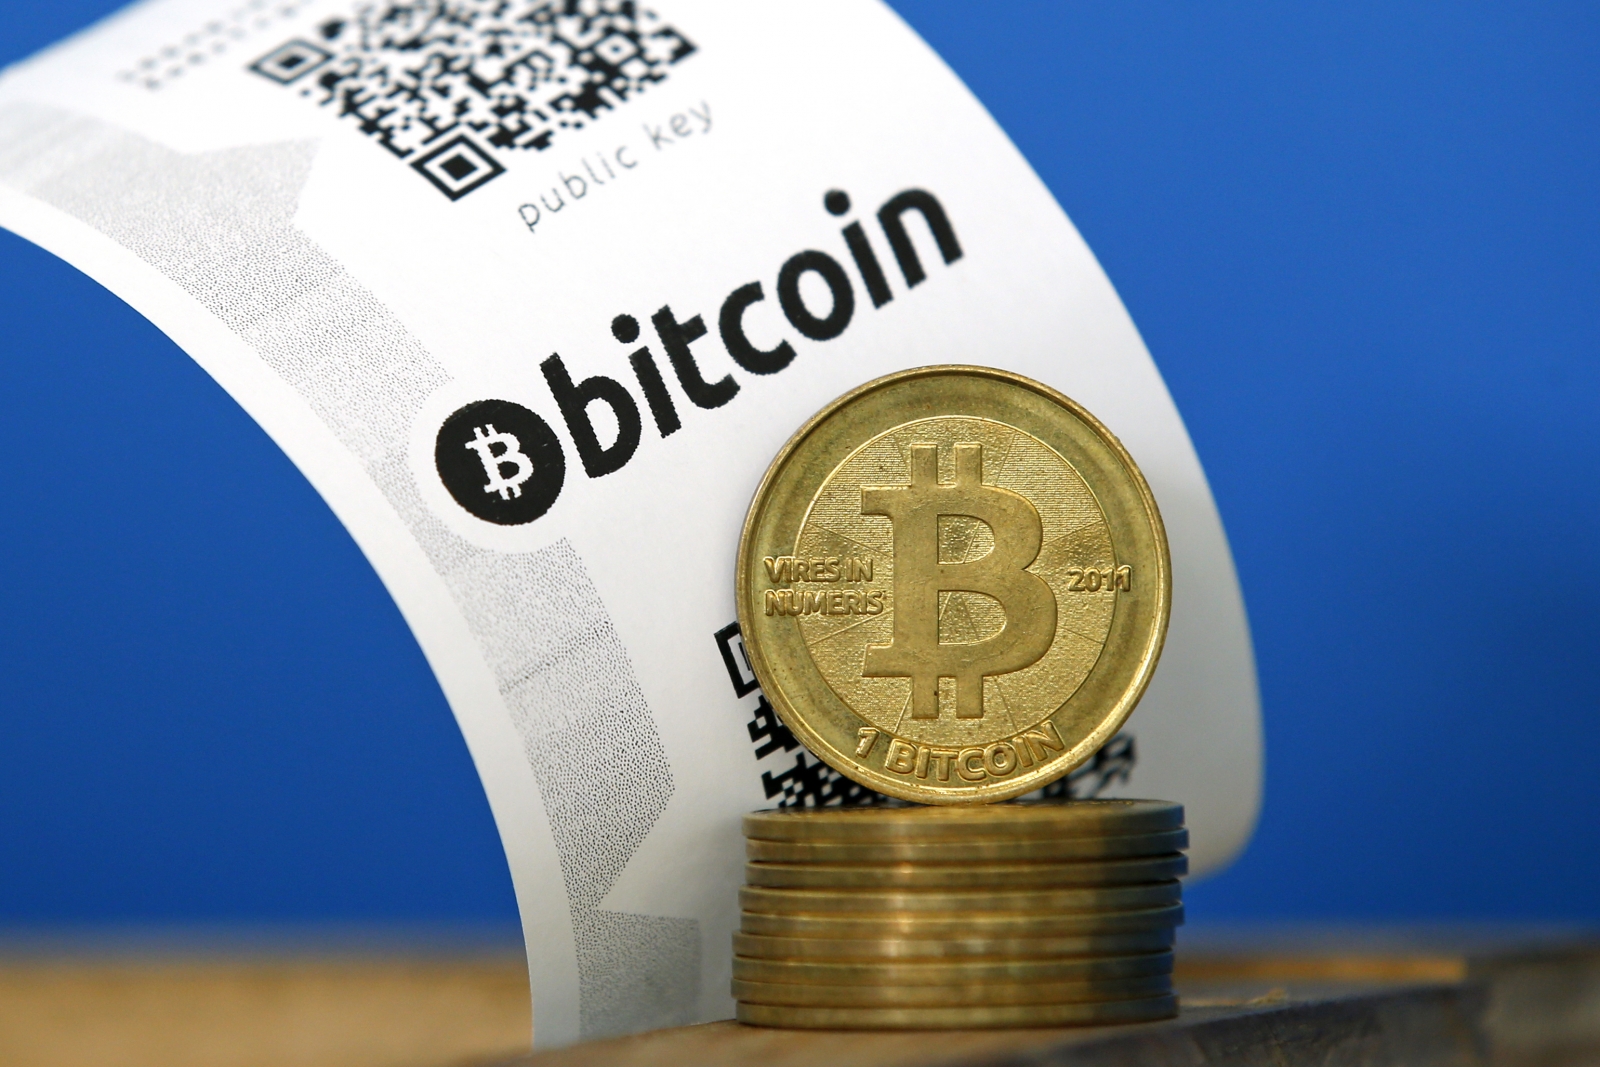 Bitcoin Firm Coinbase Raising Between $40-$60m at $400m ...